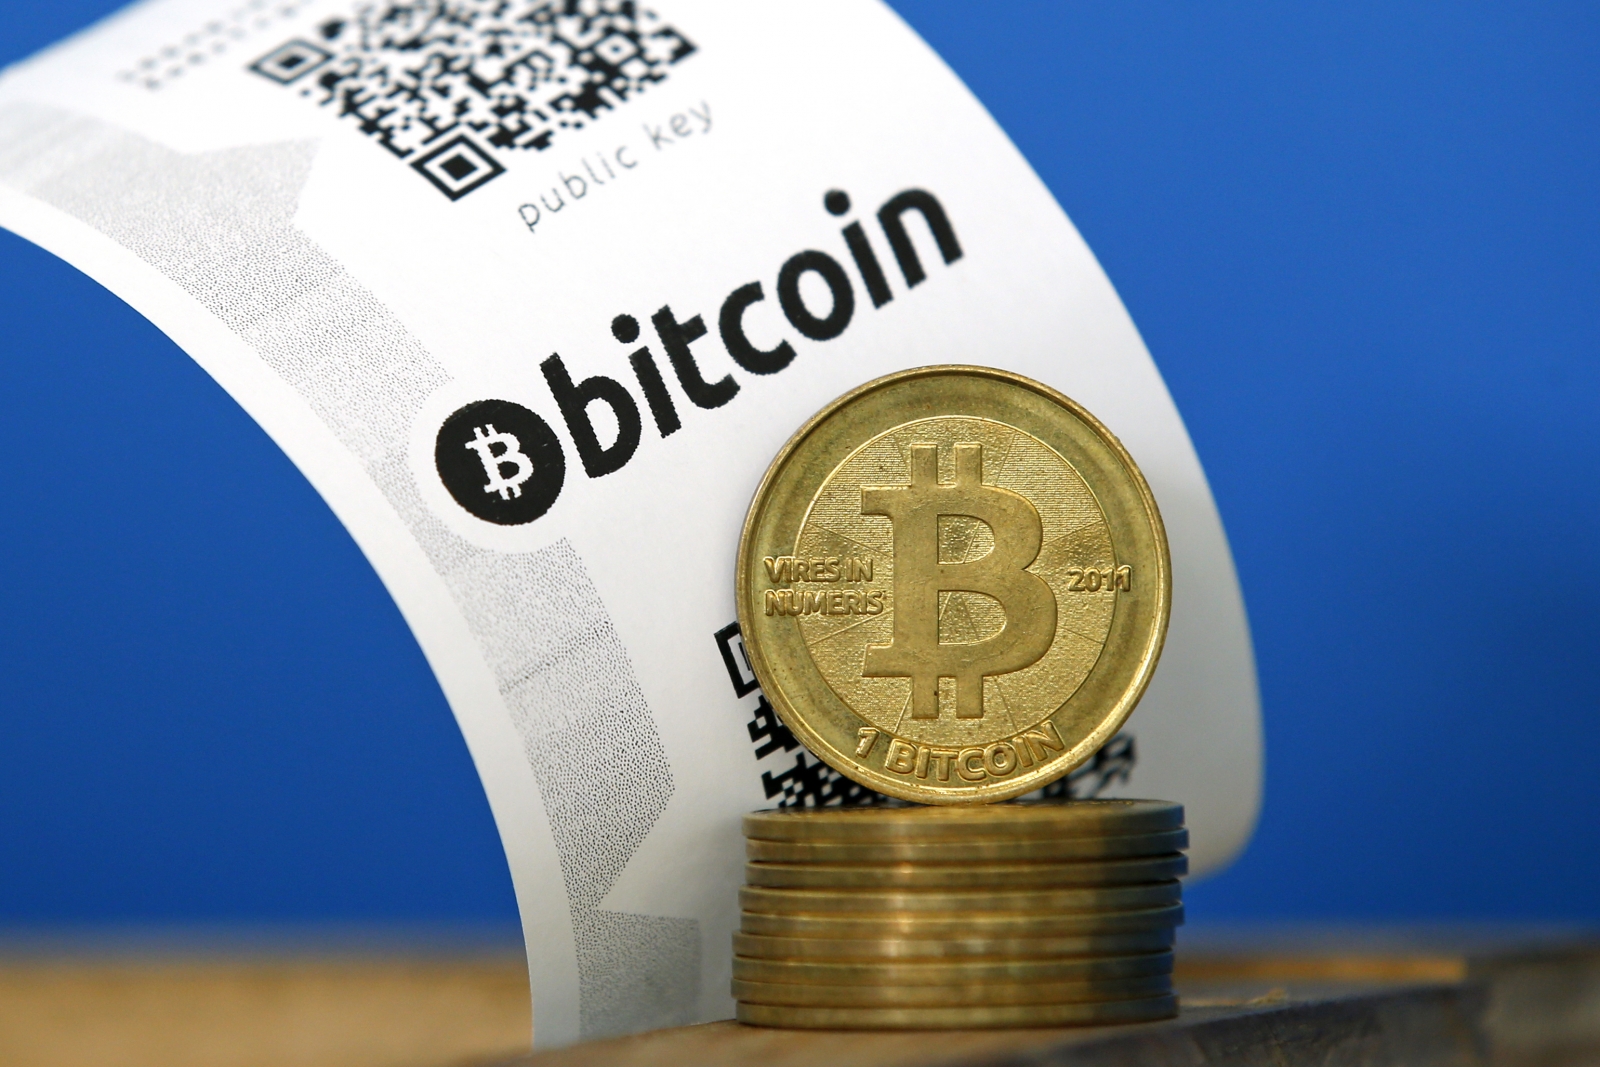 Bitcoin Firm Coinbase Raising Between $40-$60m at $400m ...